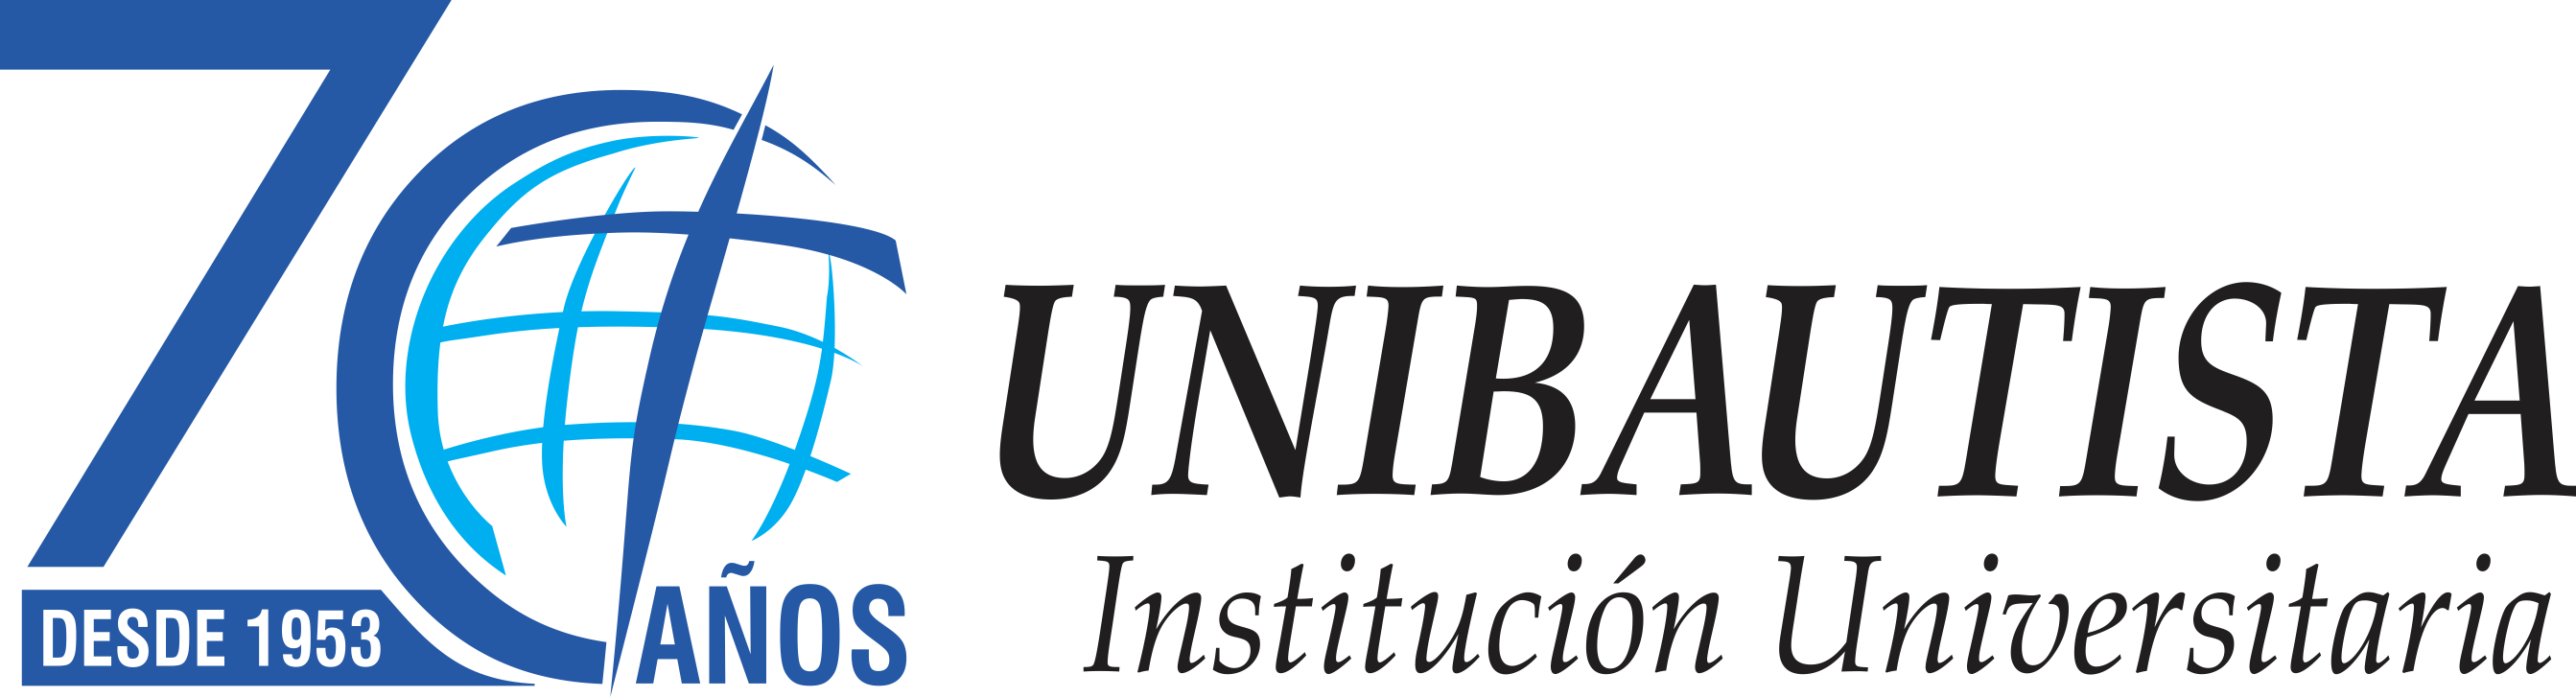 Unibautista Institución Universitaria